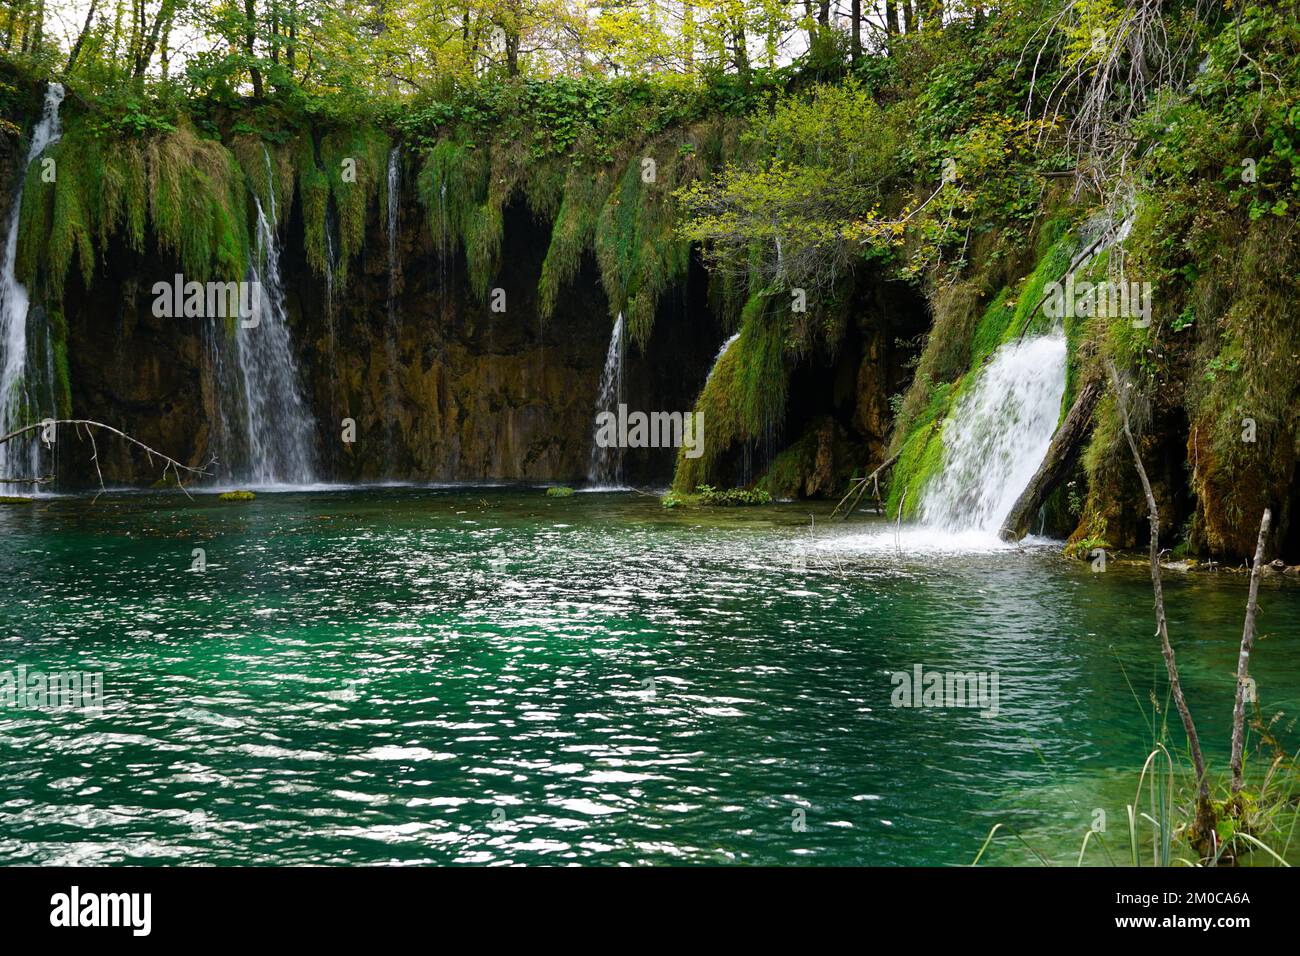 Eine fantastische Bucht mit türkisfarbenem See und kleinen Wasserfällen in einem tiefen Wald Stockfoto